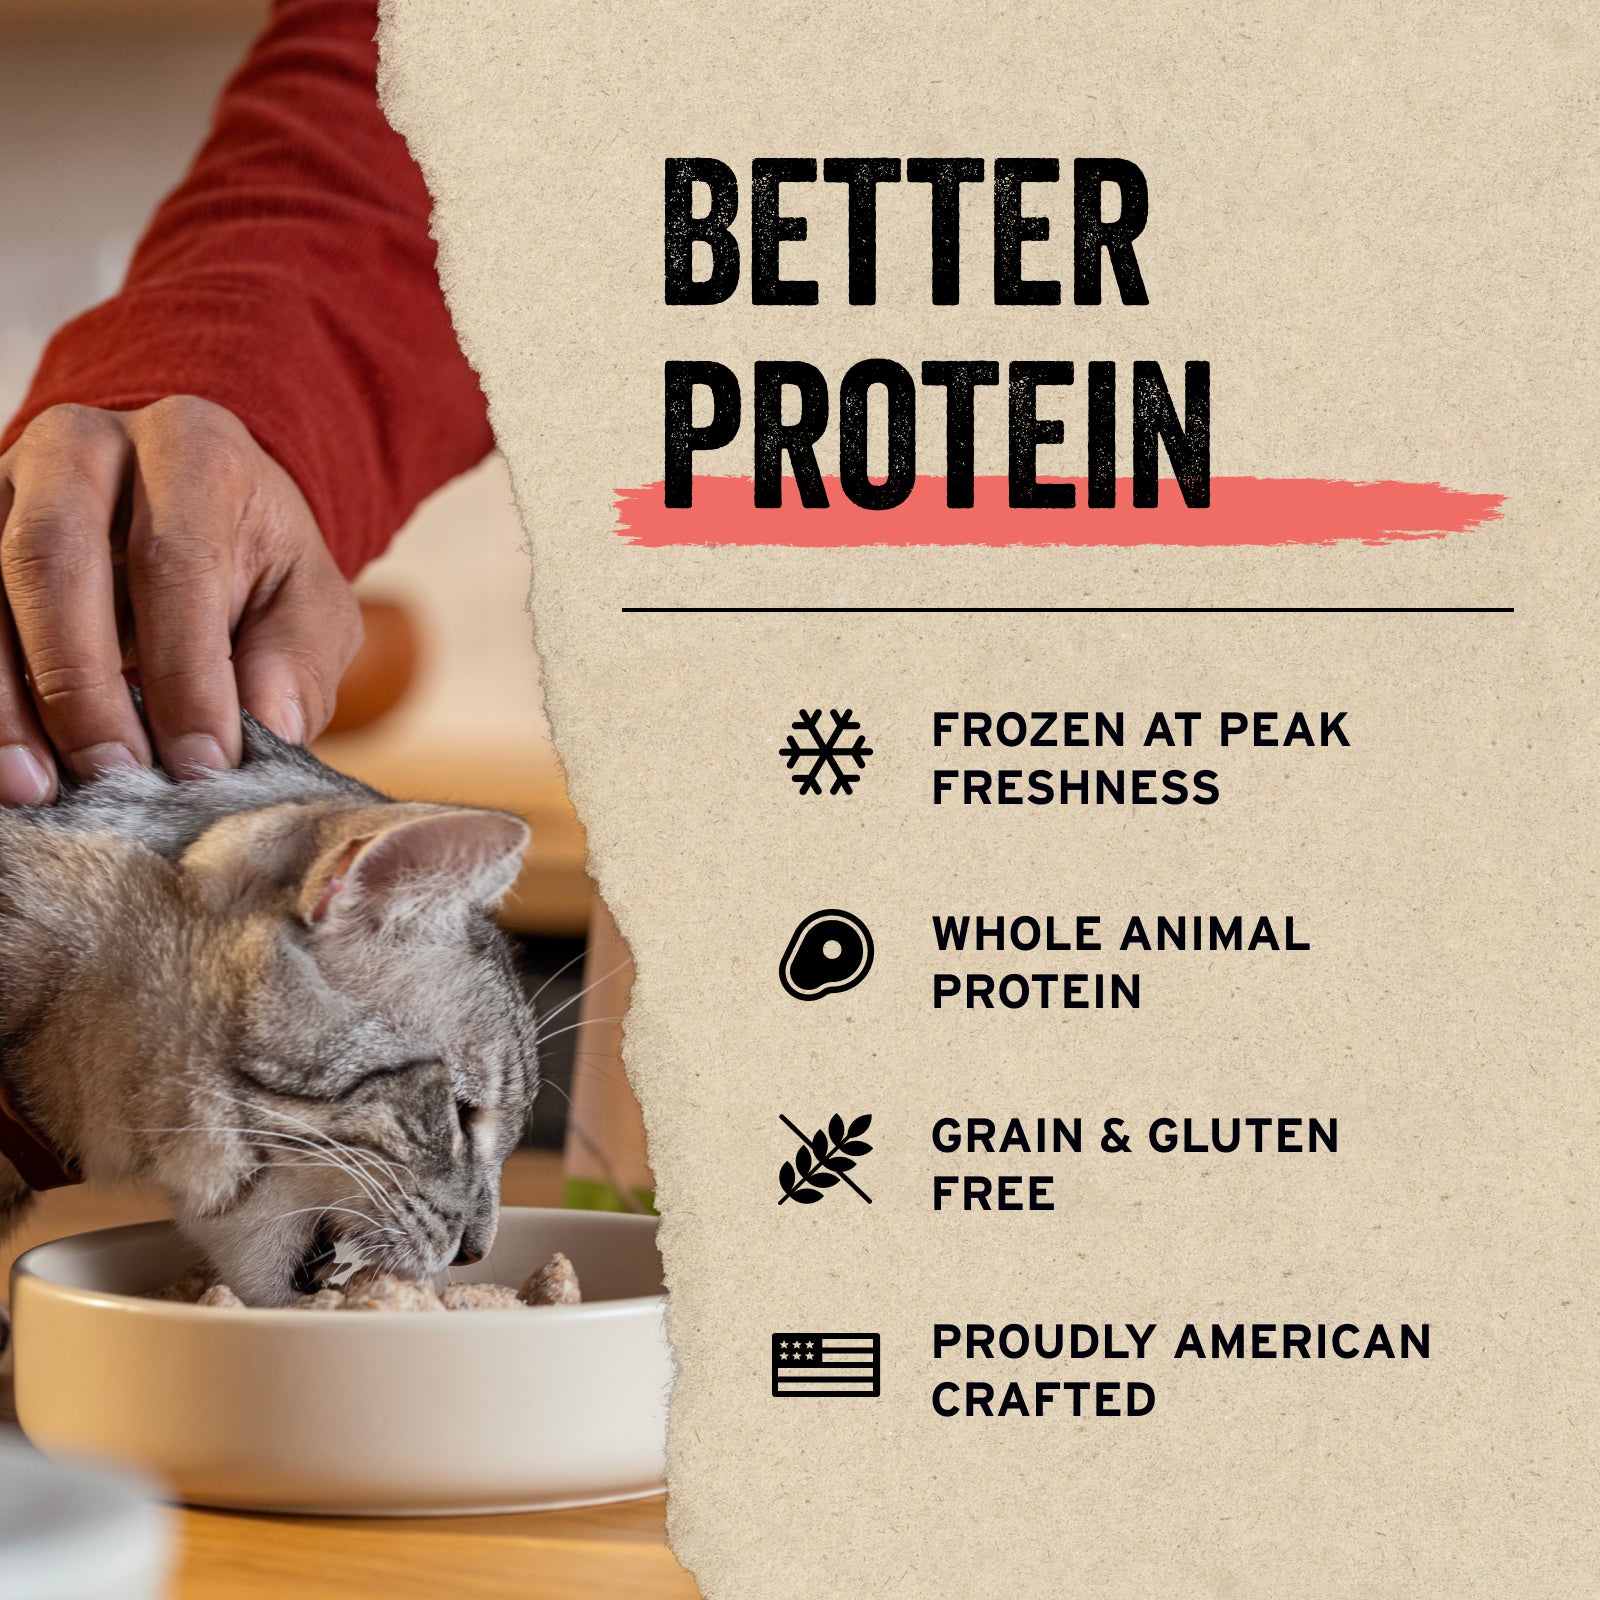 Freeze-Dried Cat Treats by Vital Essentials®